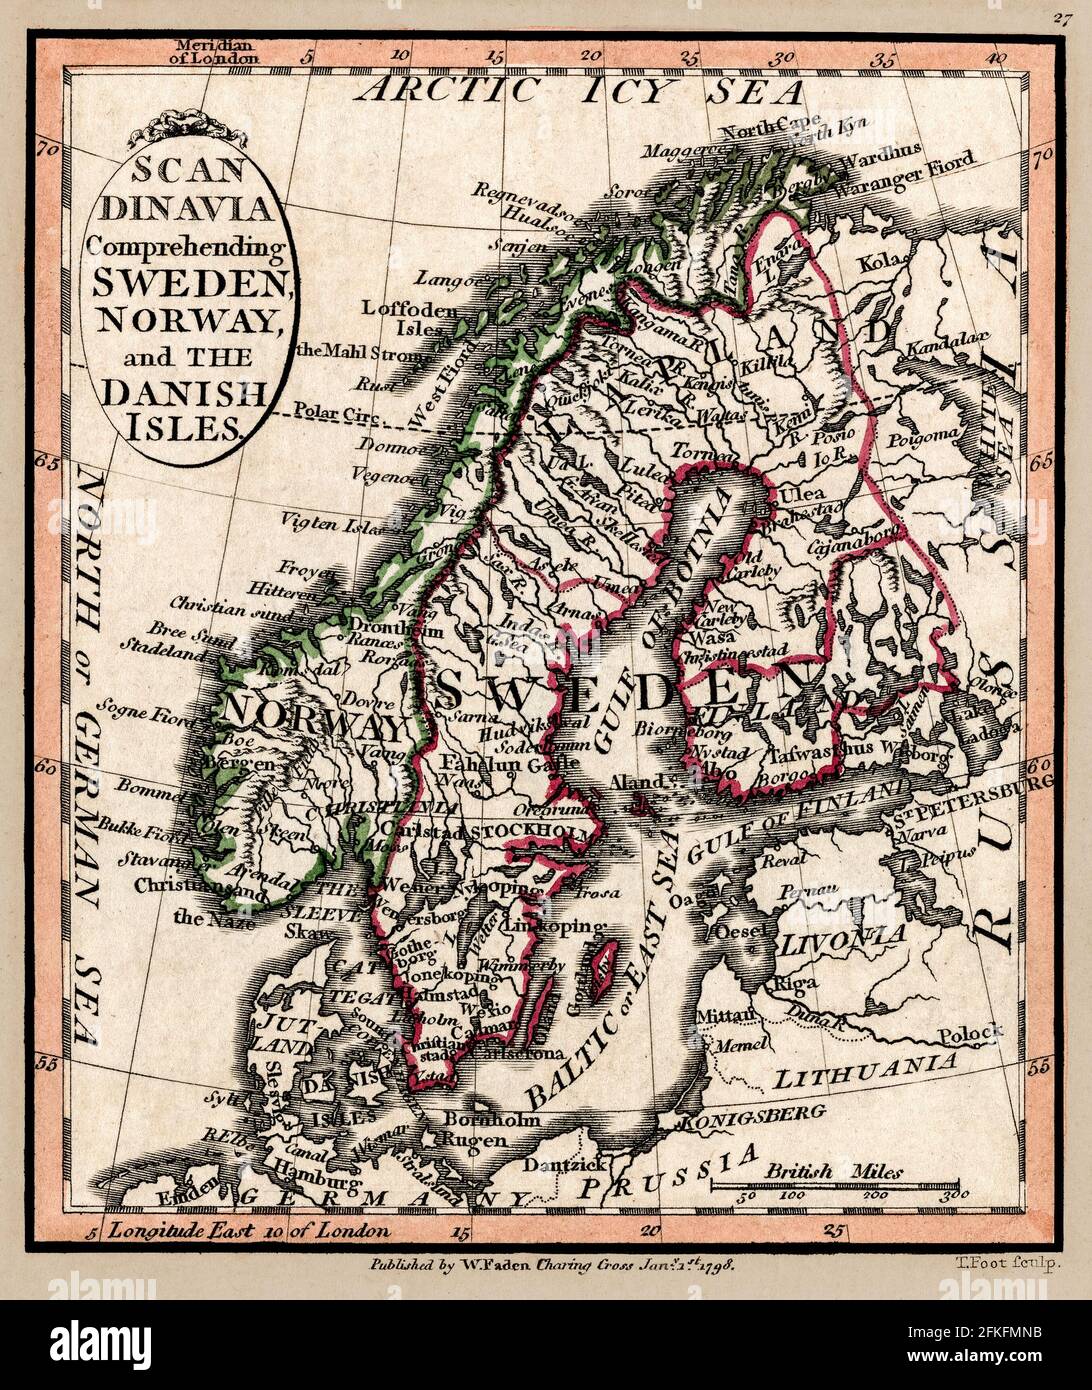 Scandinavia Mappa 1804. Titolo originale: 'Candinavia che comprende Svezia, Norvegia e le isole danesi.' Mappa del famoso cartografo William Faden con data di pubblicazione del 1804. Foto Stock